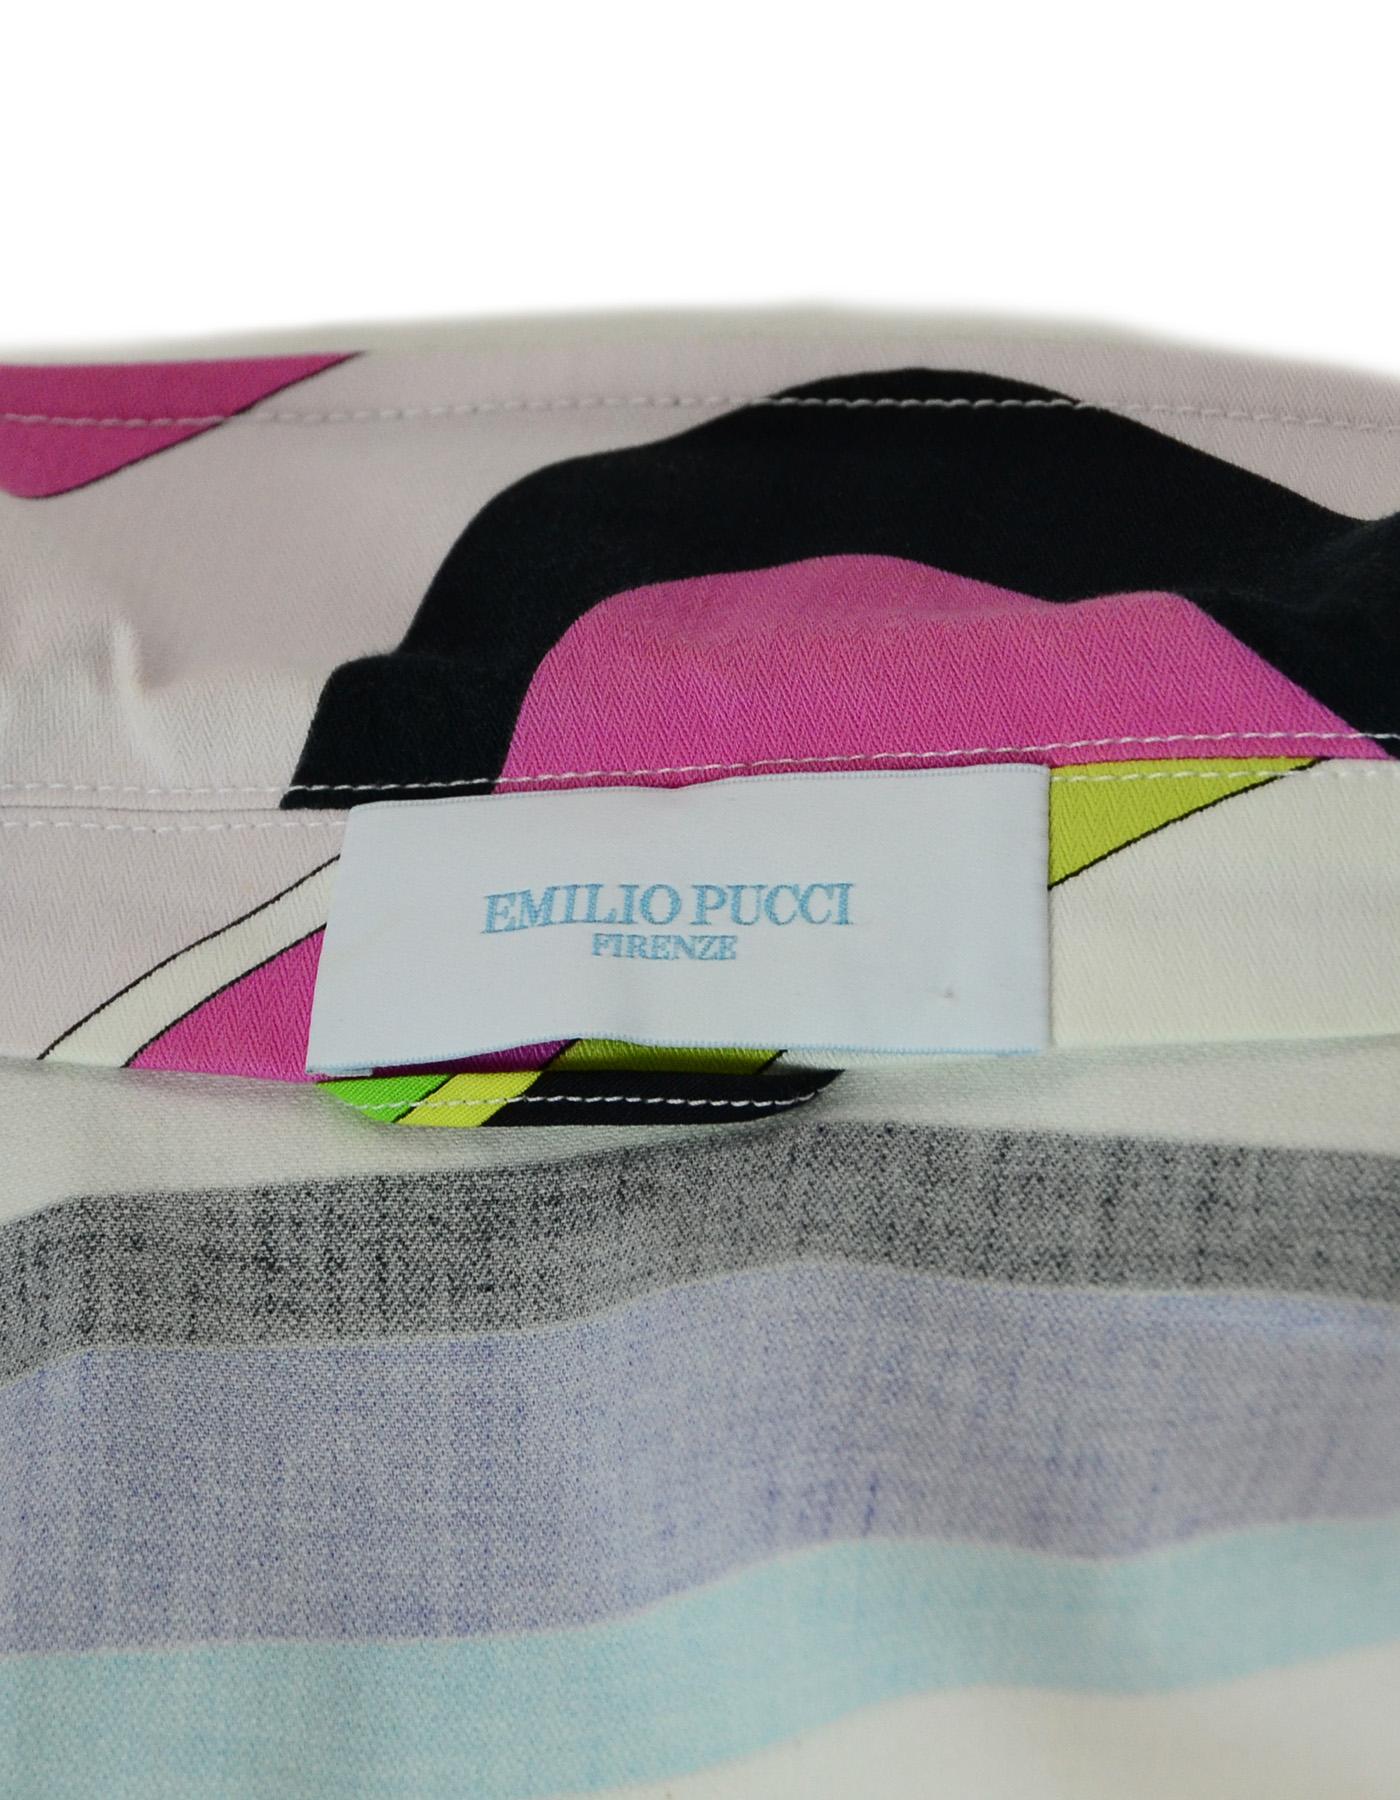 Emilio Pucci Multi-Color Cotton Long Sleeve Blazer/Jacket Sz 36 2